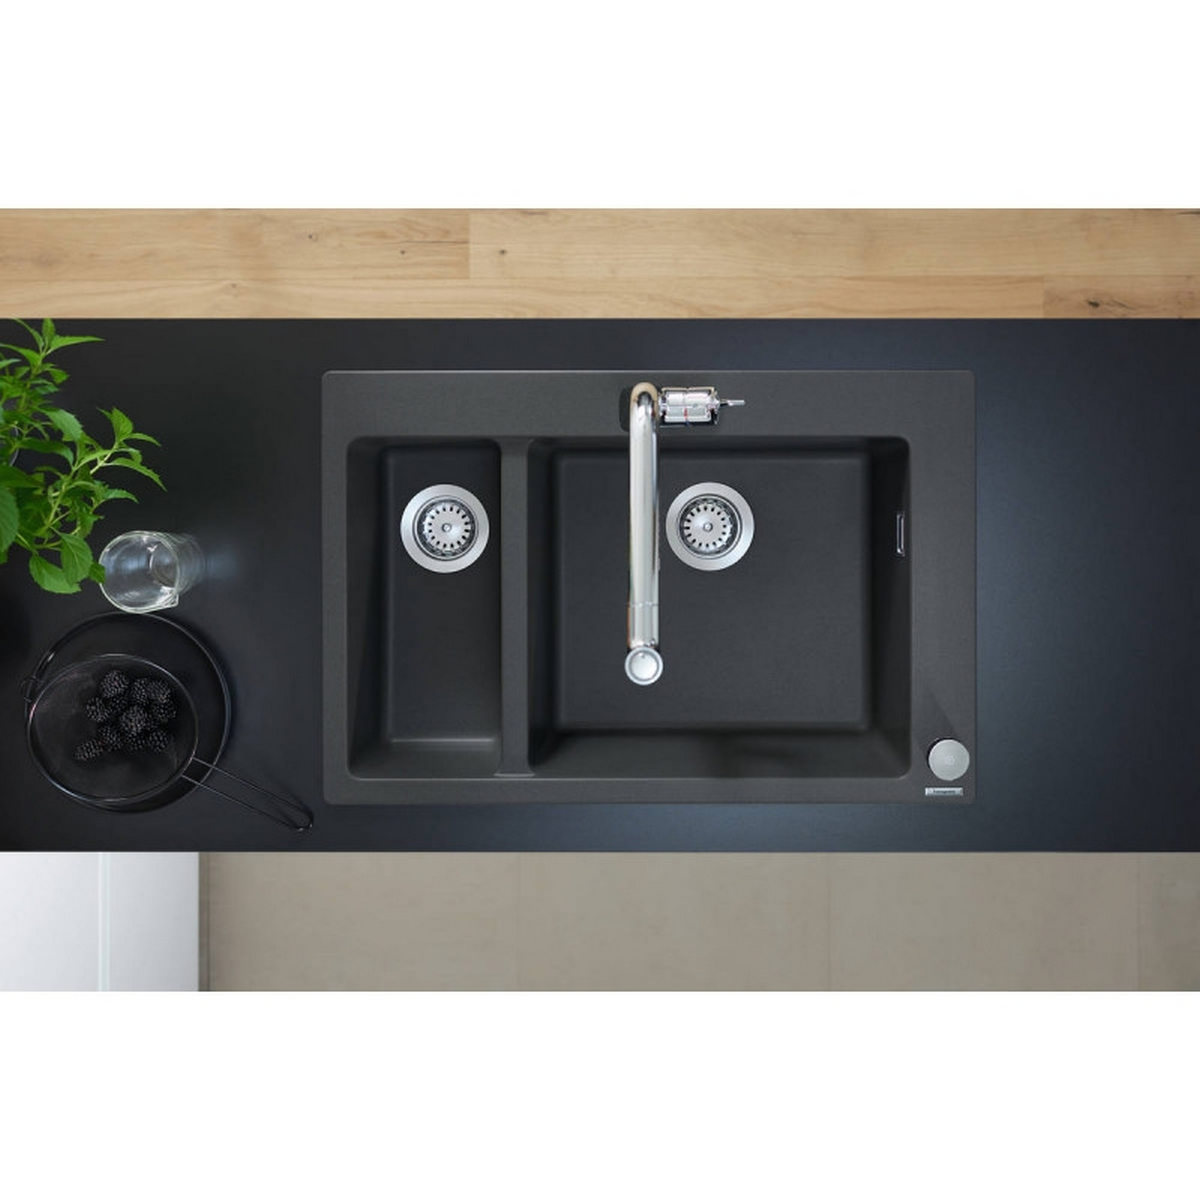 Кухонный комплект Hansgrohe C51 C51-F635-04 43215000 в интернет-магазине, главное фото